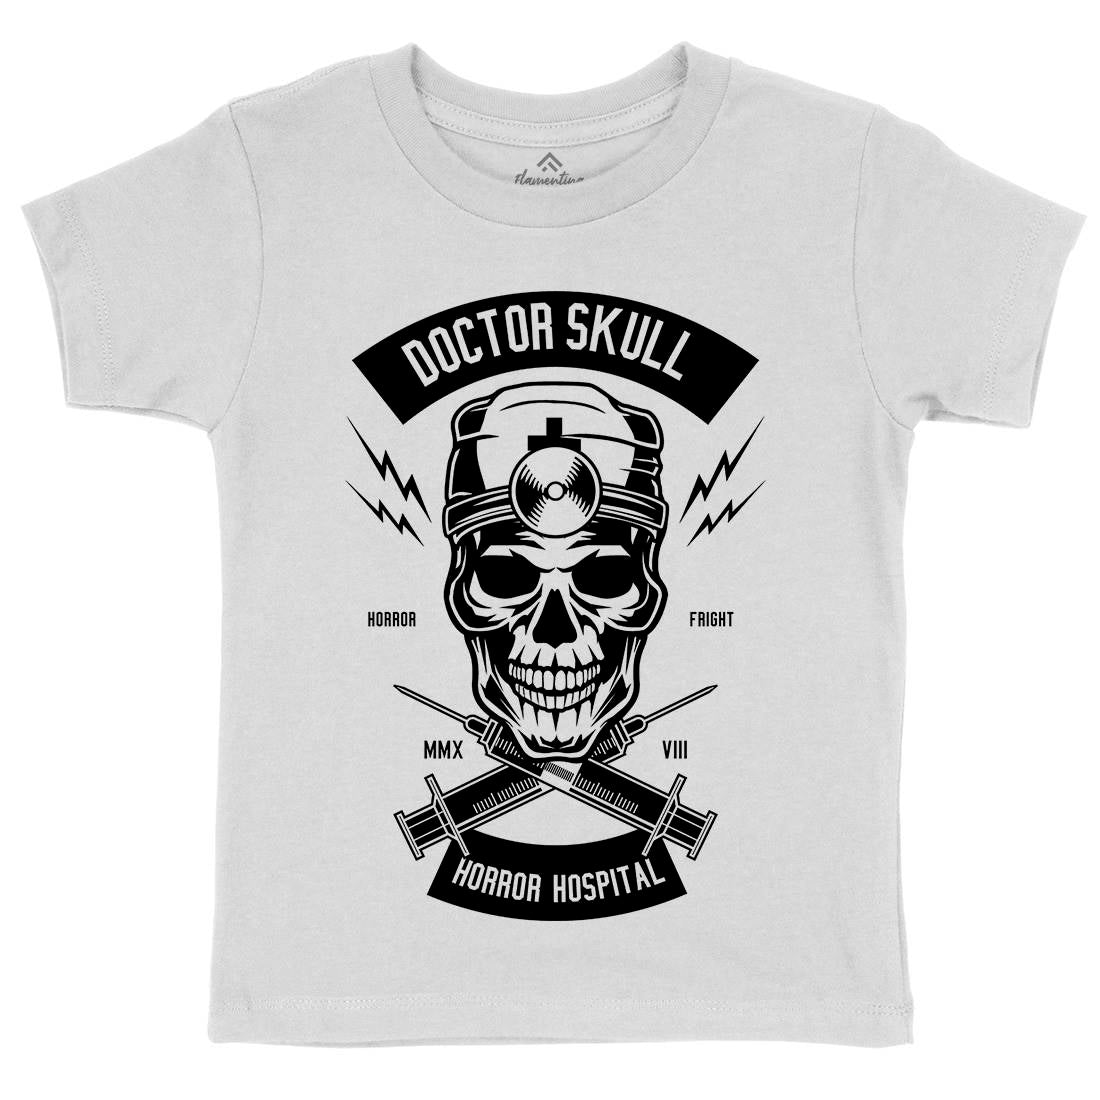 Doctor Skull Kids Organic Crew Neck T-Shirt Horror B533